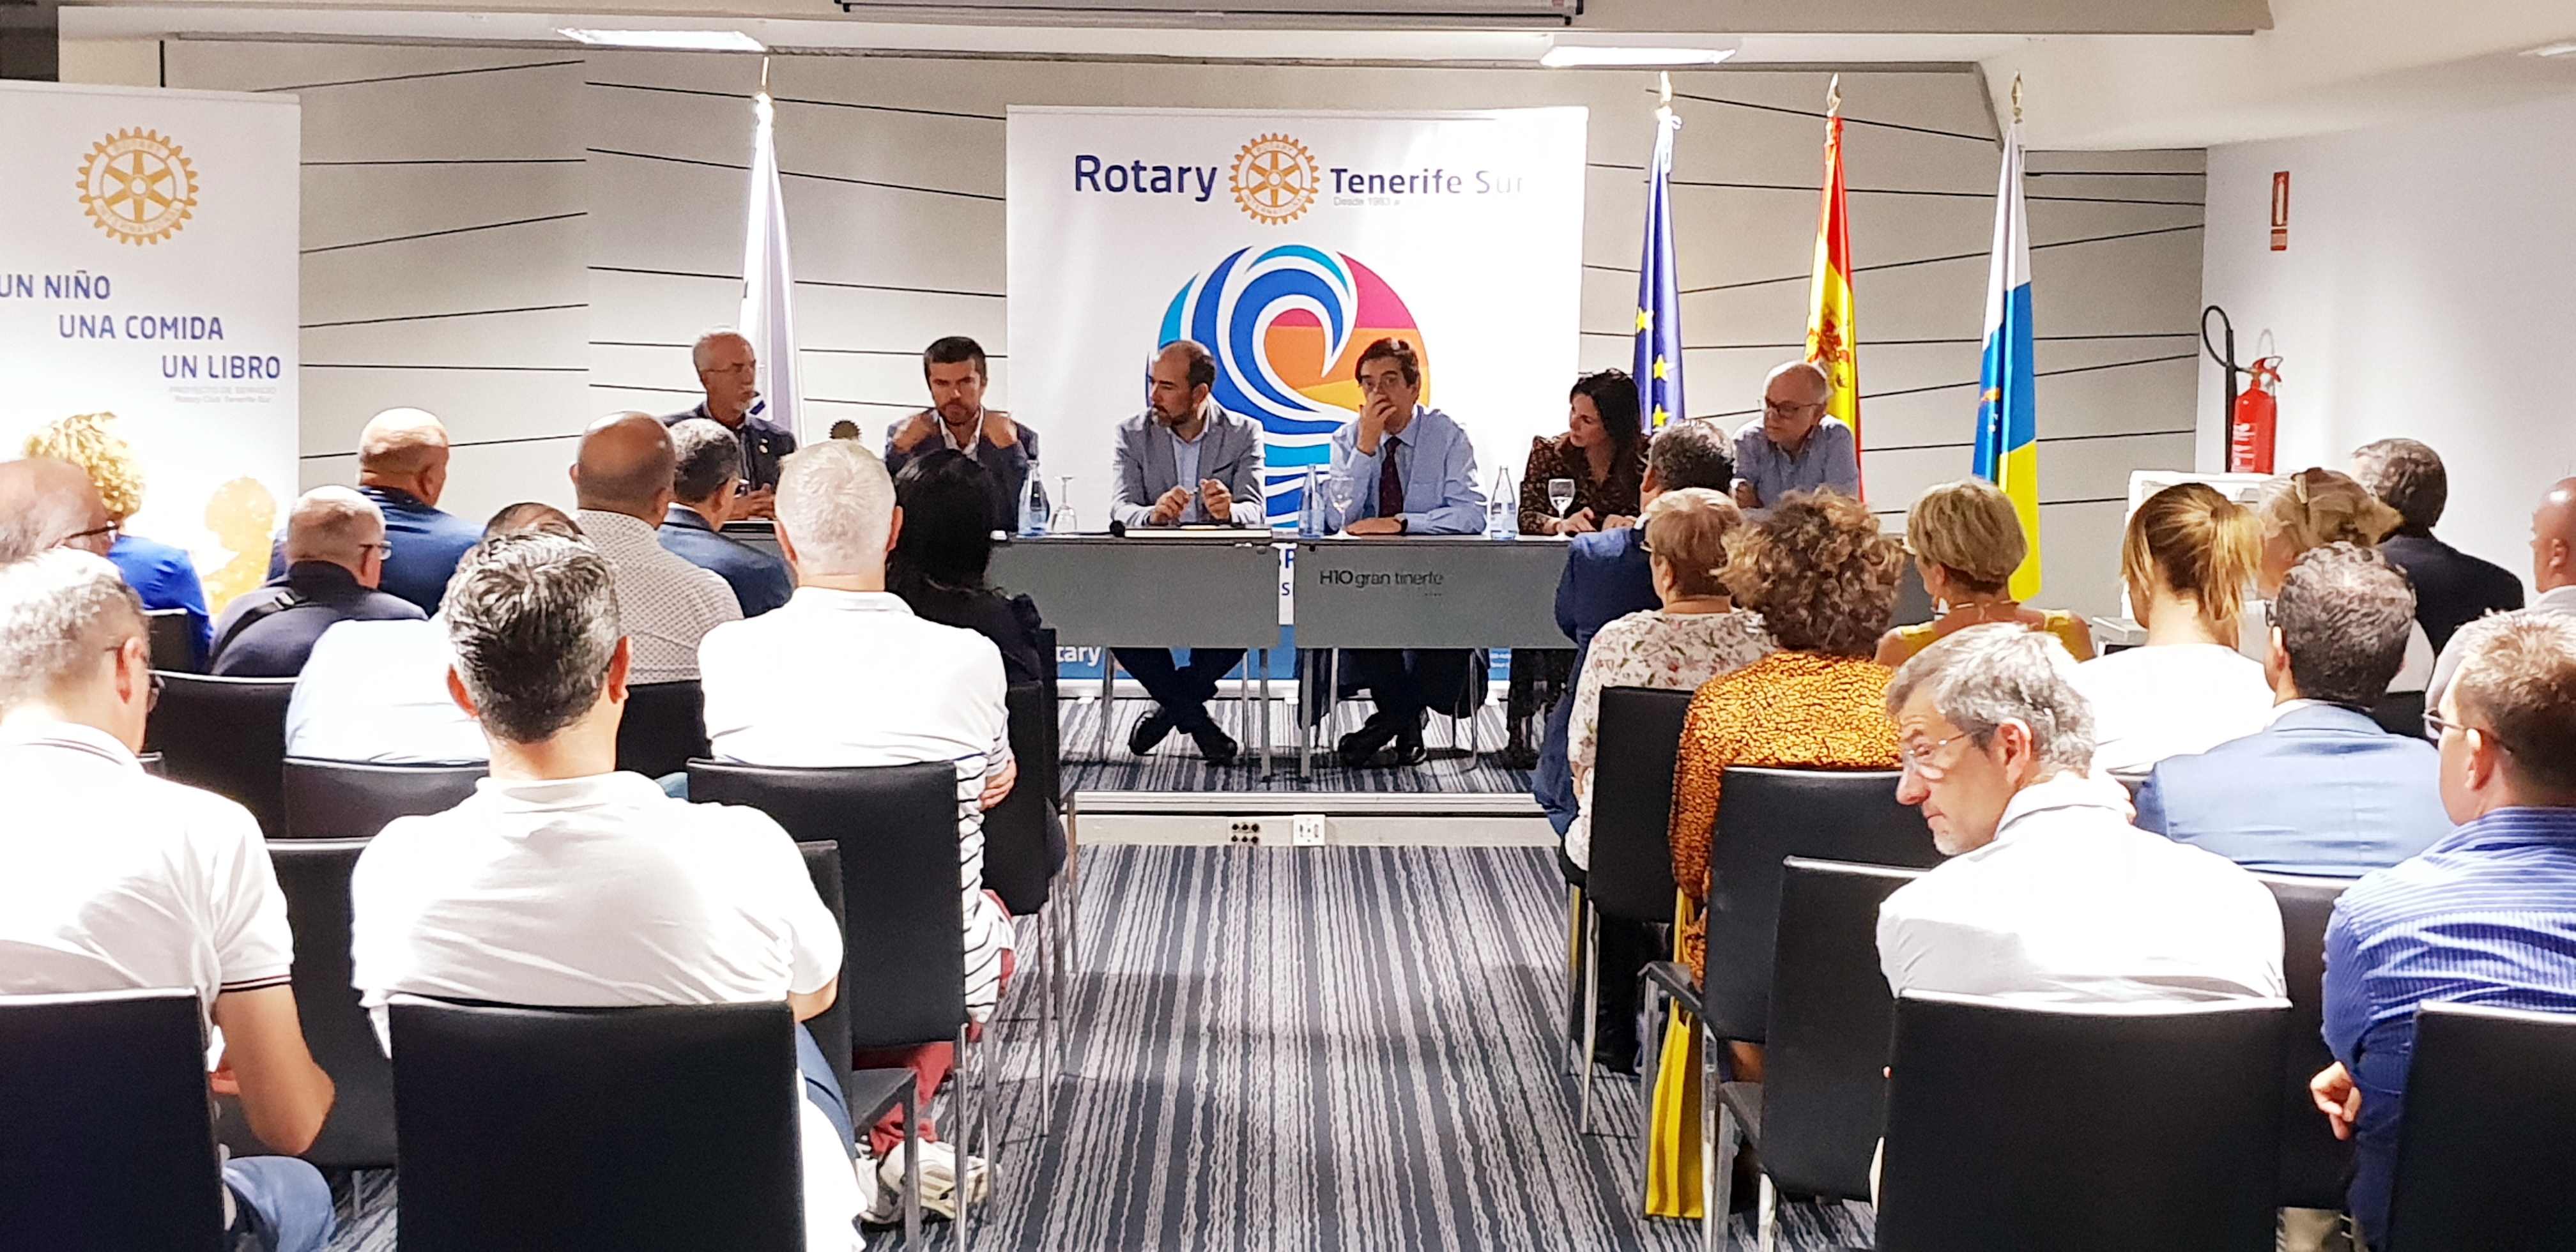 Antonio Martinón, rector magnífico de la Universidad de La Laguna ofrece una interesantísima charla en el Rotary Club Tenerife Sur